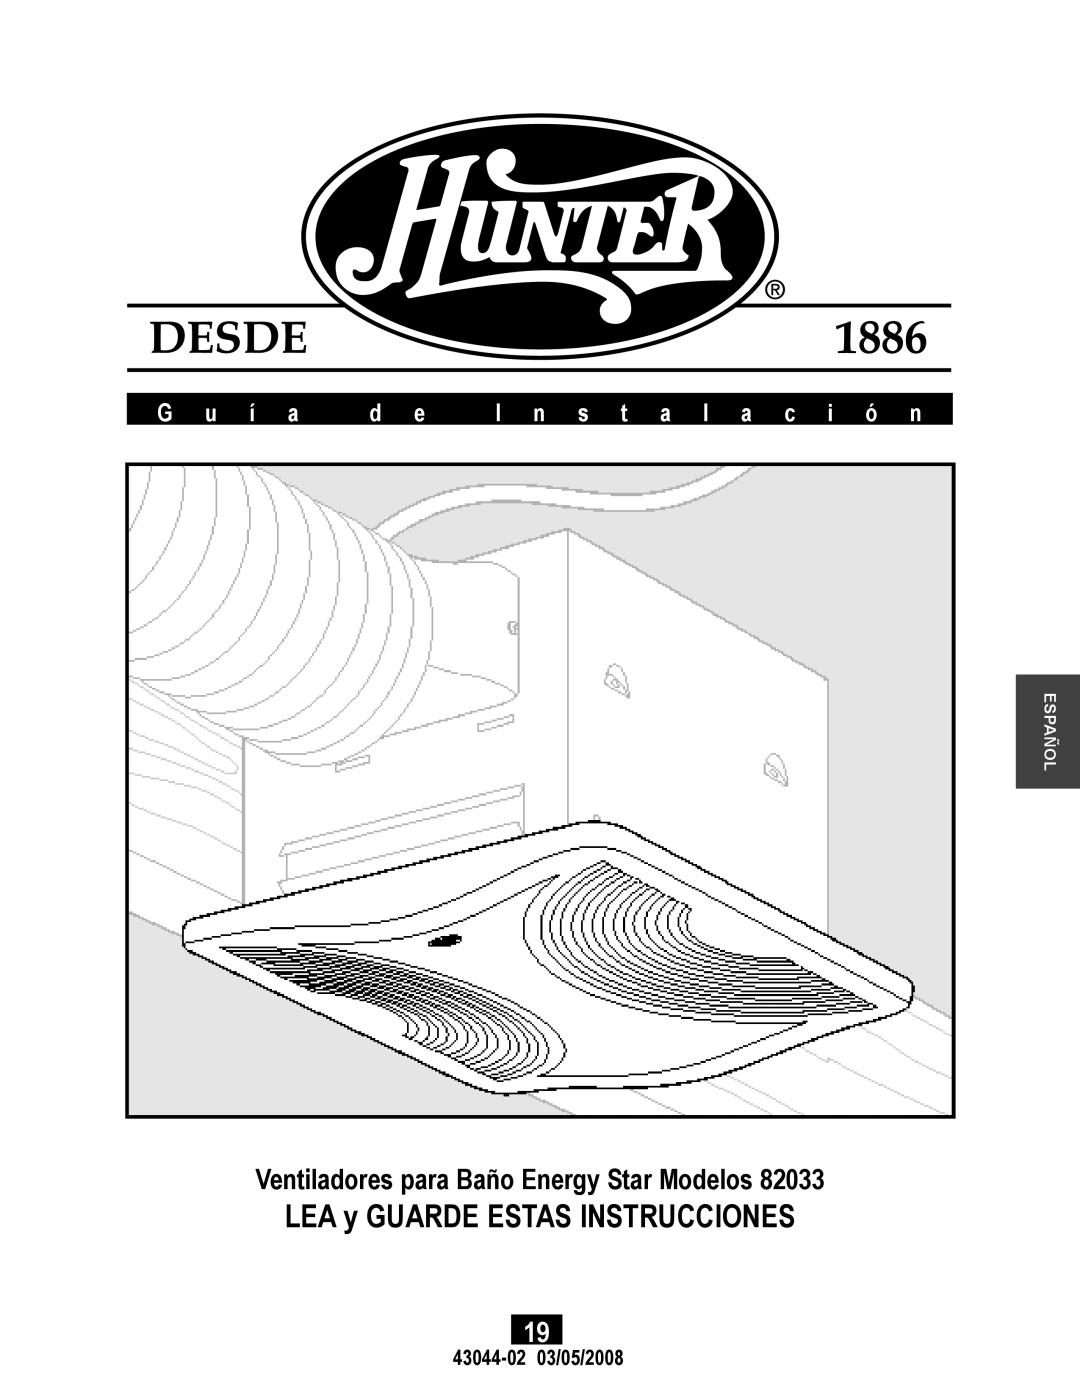 Hunter Fan 82033 LEA y GUARDE ESTAS INSTRUCCIONES, Ventiladores para Baño Energy Star Modelos, G u í a, 43044-0203/05/2008 